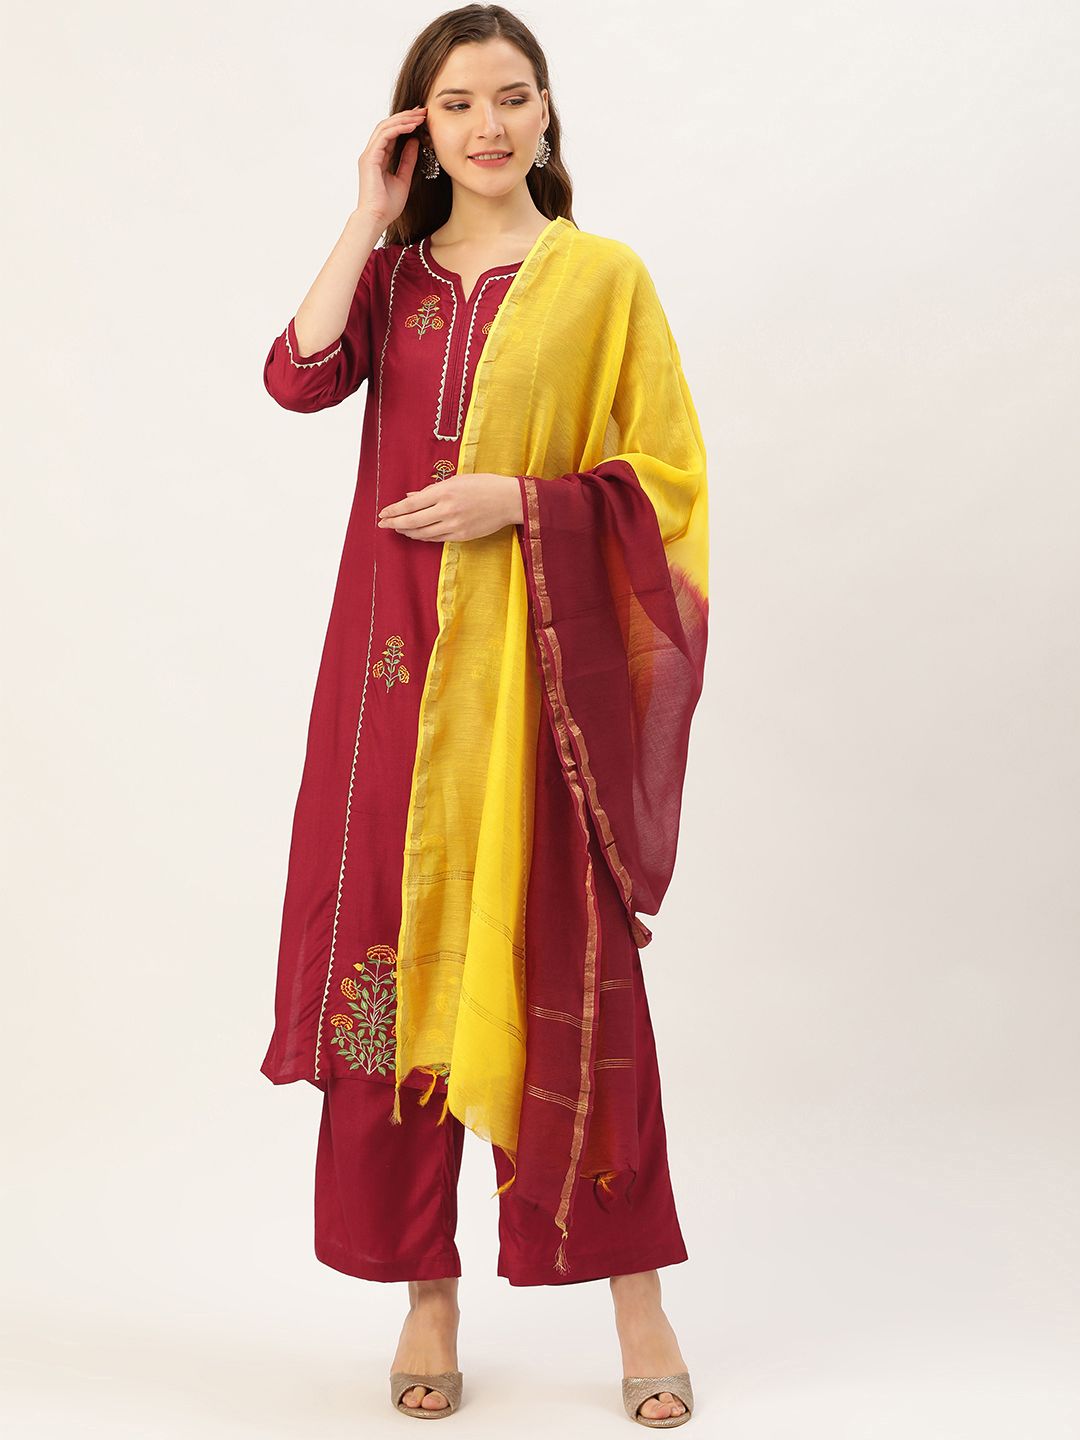 Jaipur Kurti Women Maroon & Yellow Embroidered Kurta with Palazzos & Dupatta Price in India